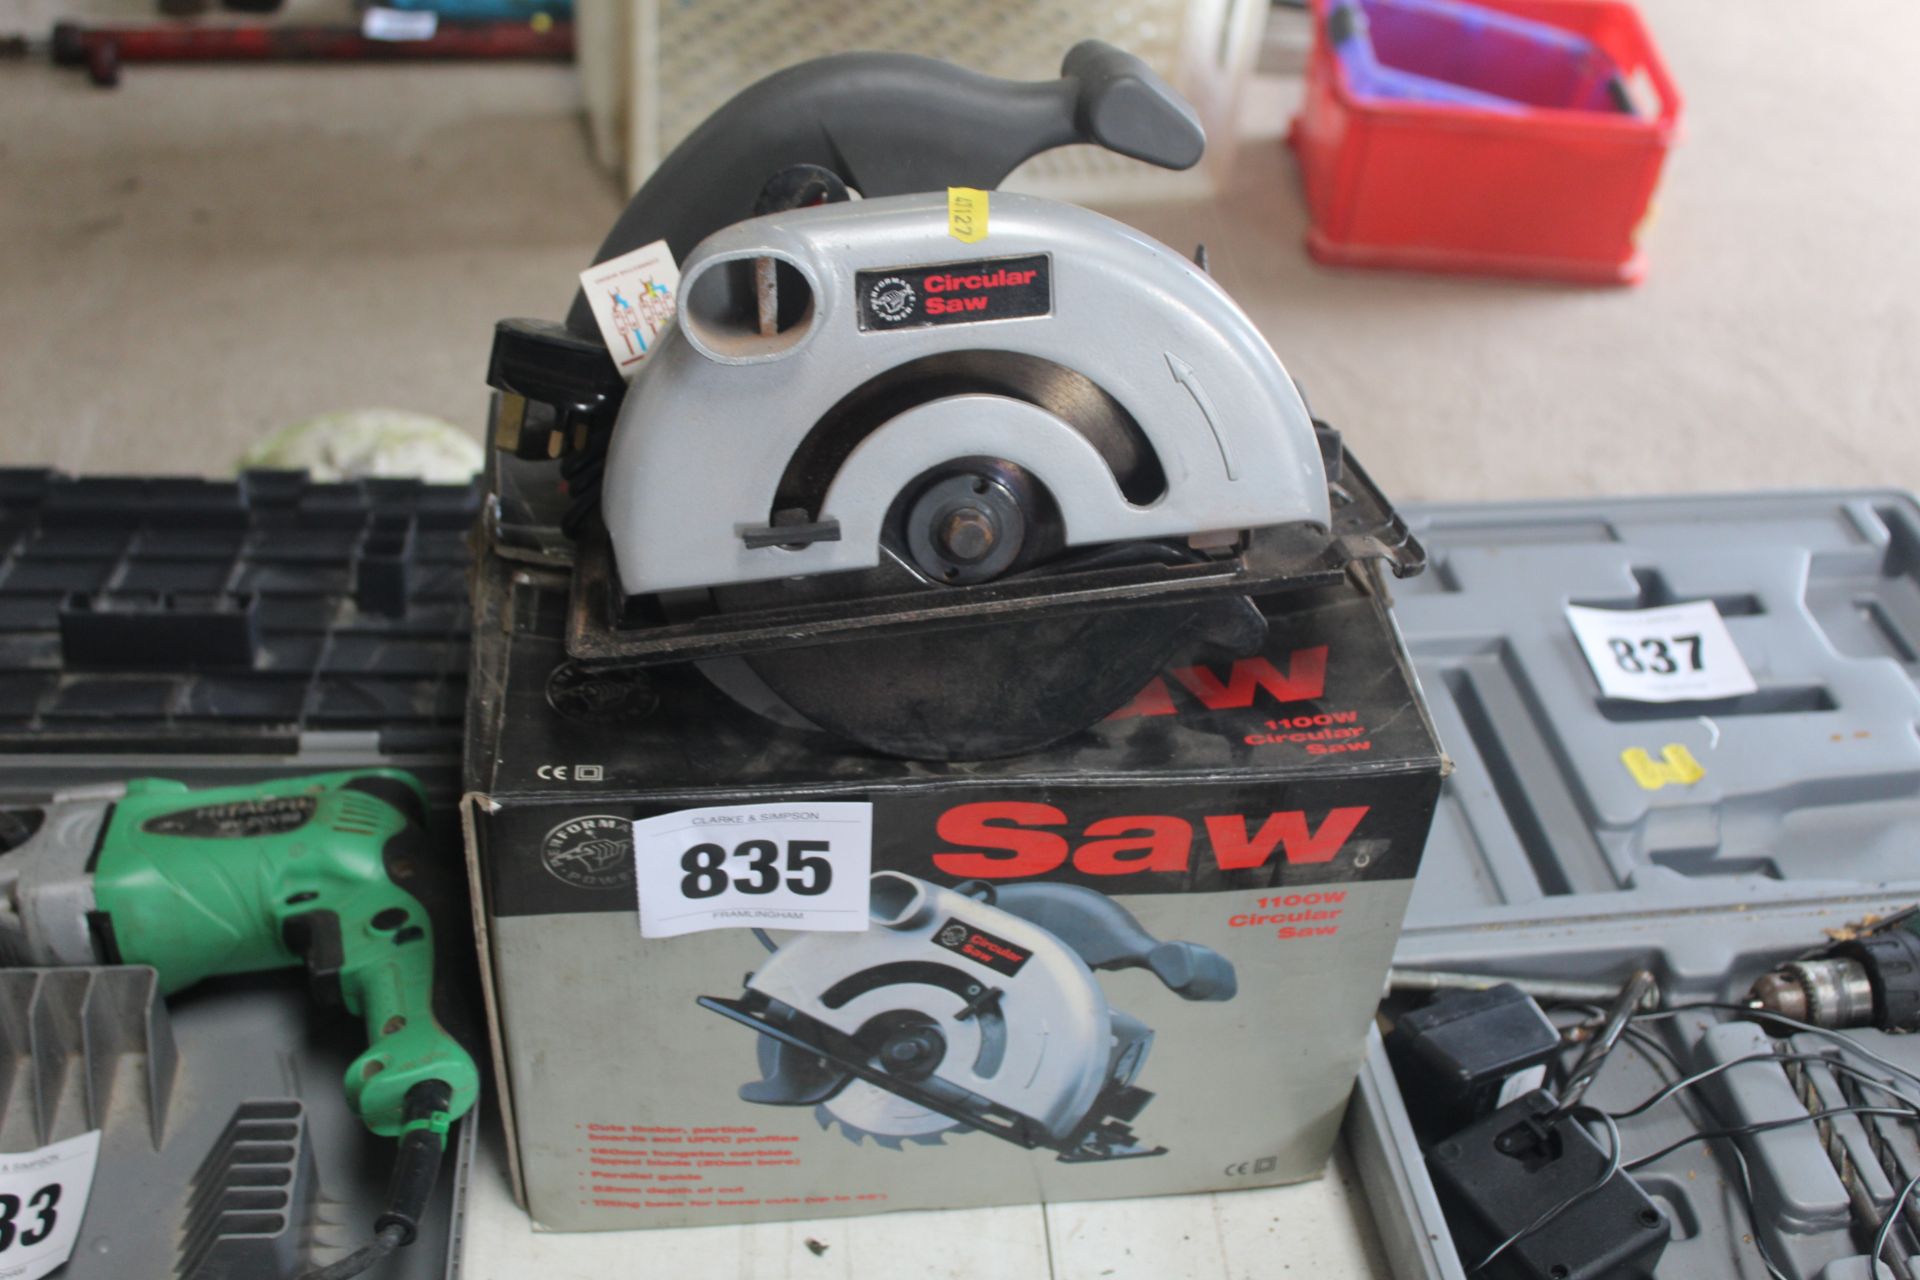 240v circular saw.